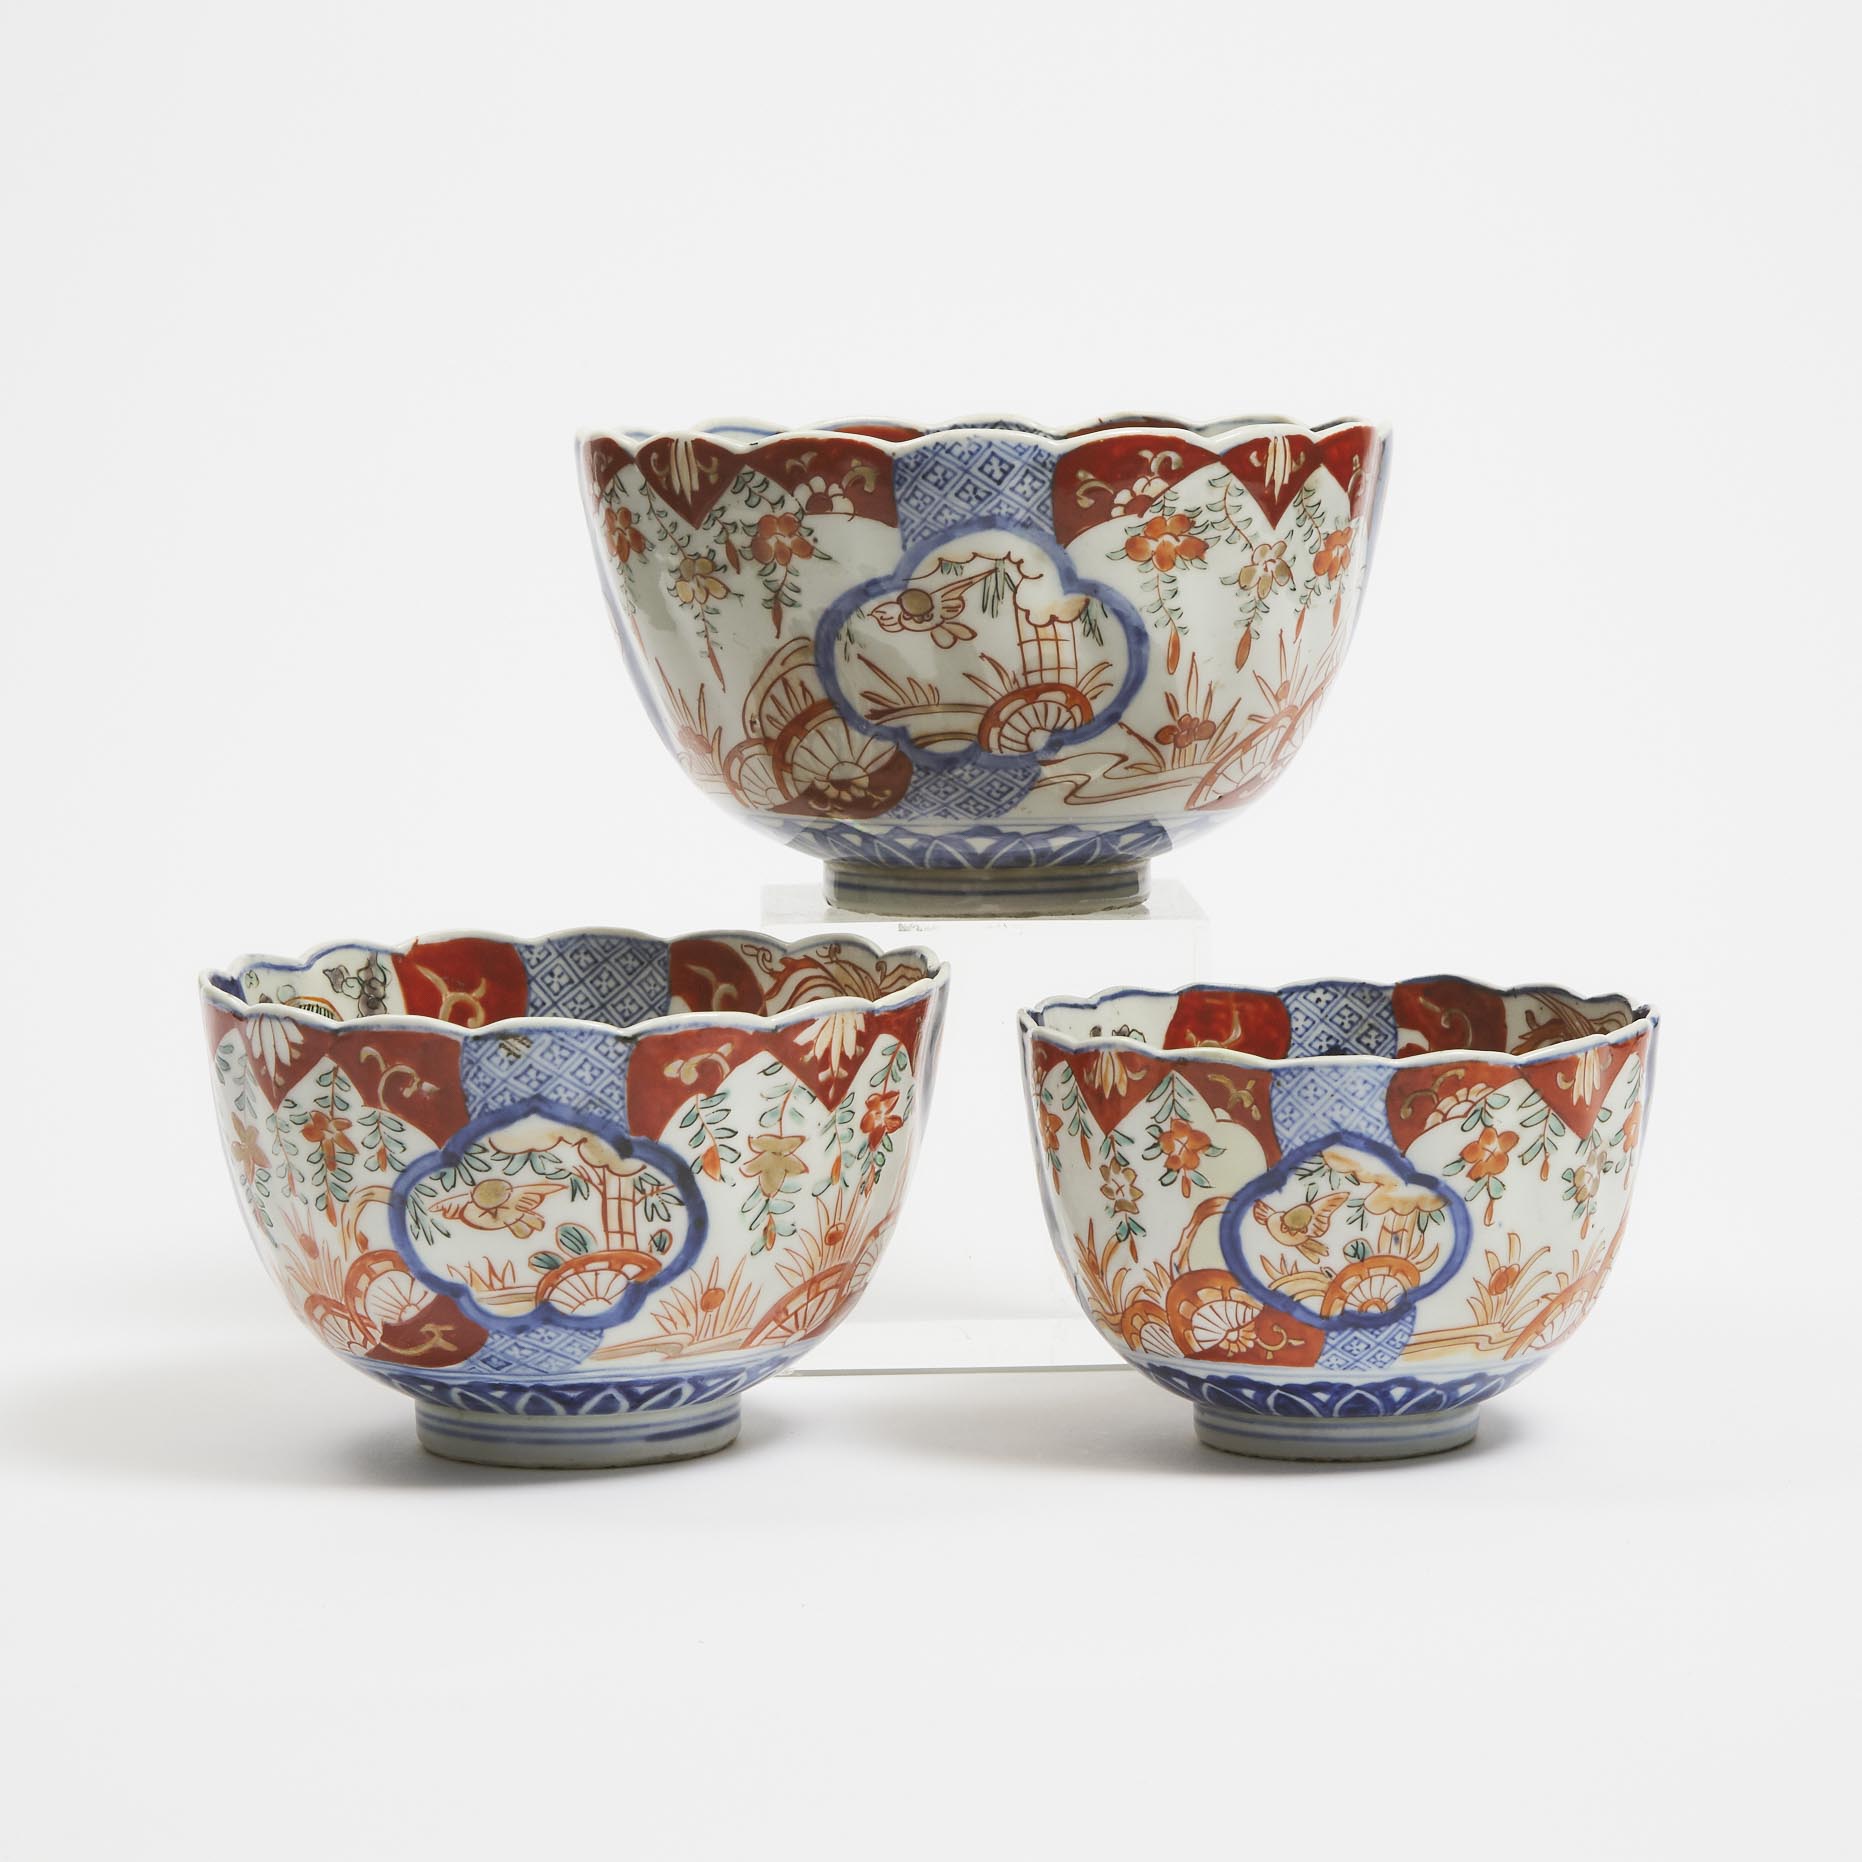 A Set of Three Imari Nesting Bowls  3ac24b